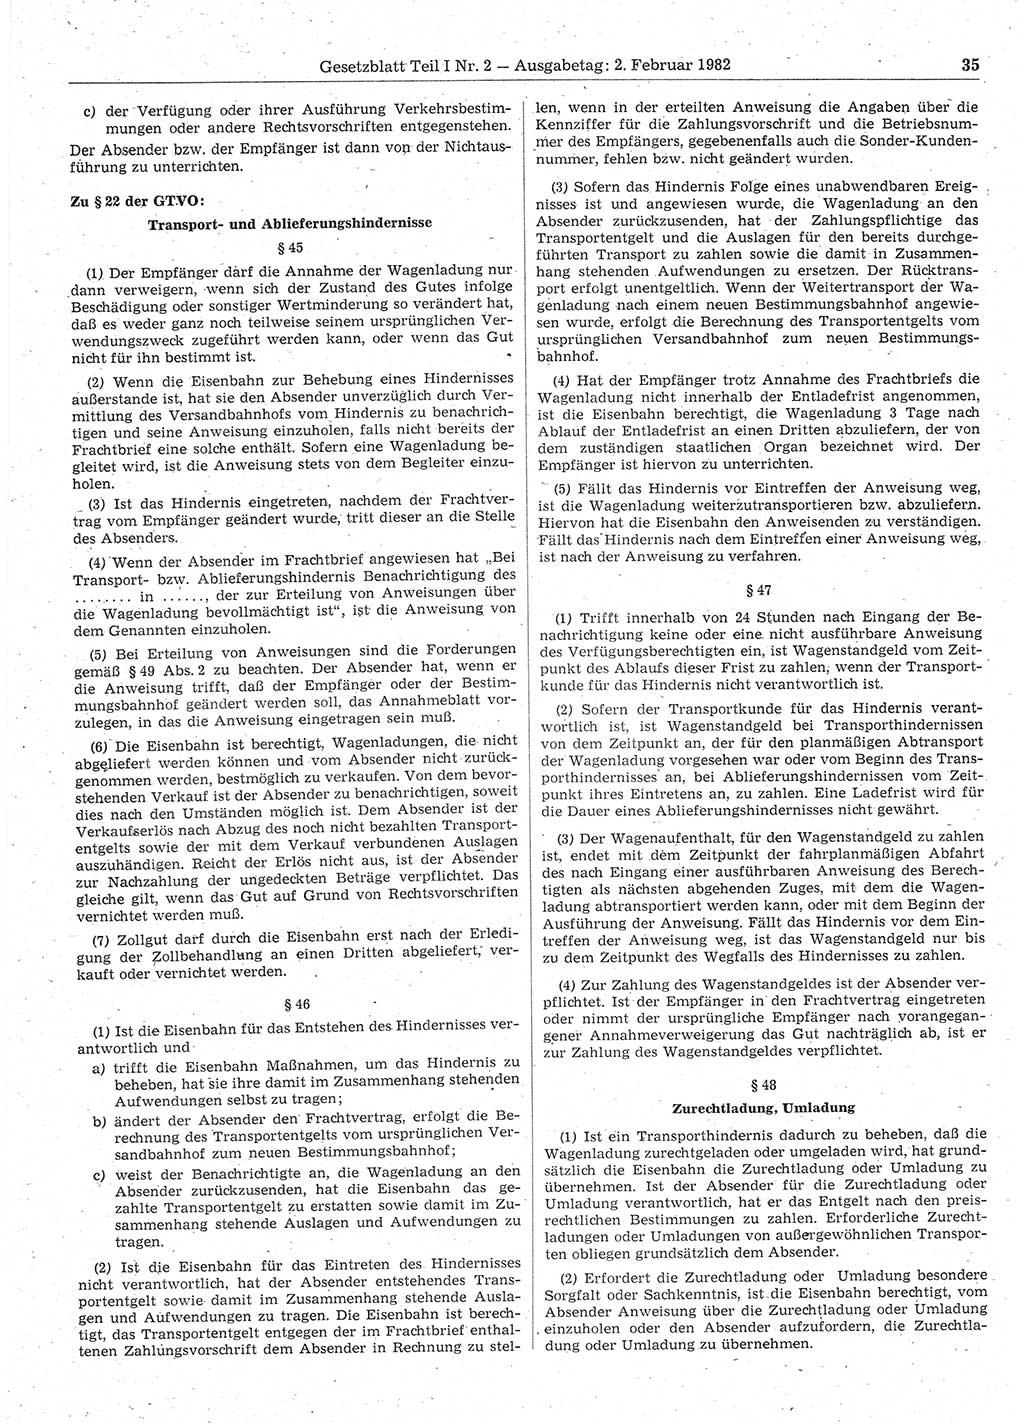 Gesetzblatt (GBl.) der Deutschen Demokratischen Republik (DDR) Teil Ⅰ 1982, Seite 35 (GBl. DDR Ⅰ 1982, S. 35)